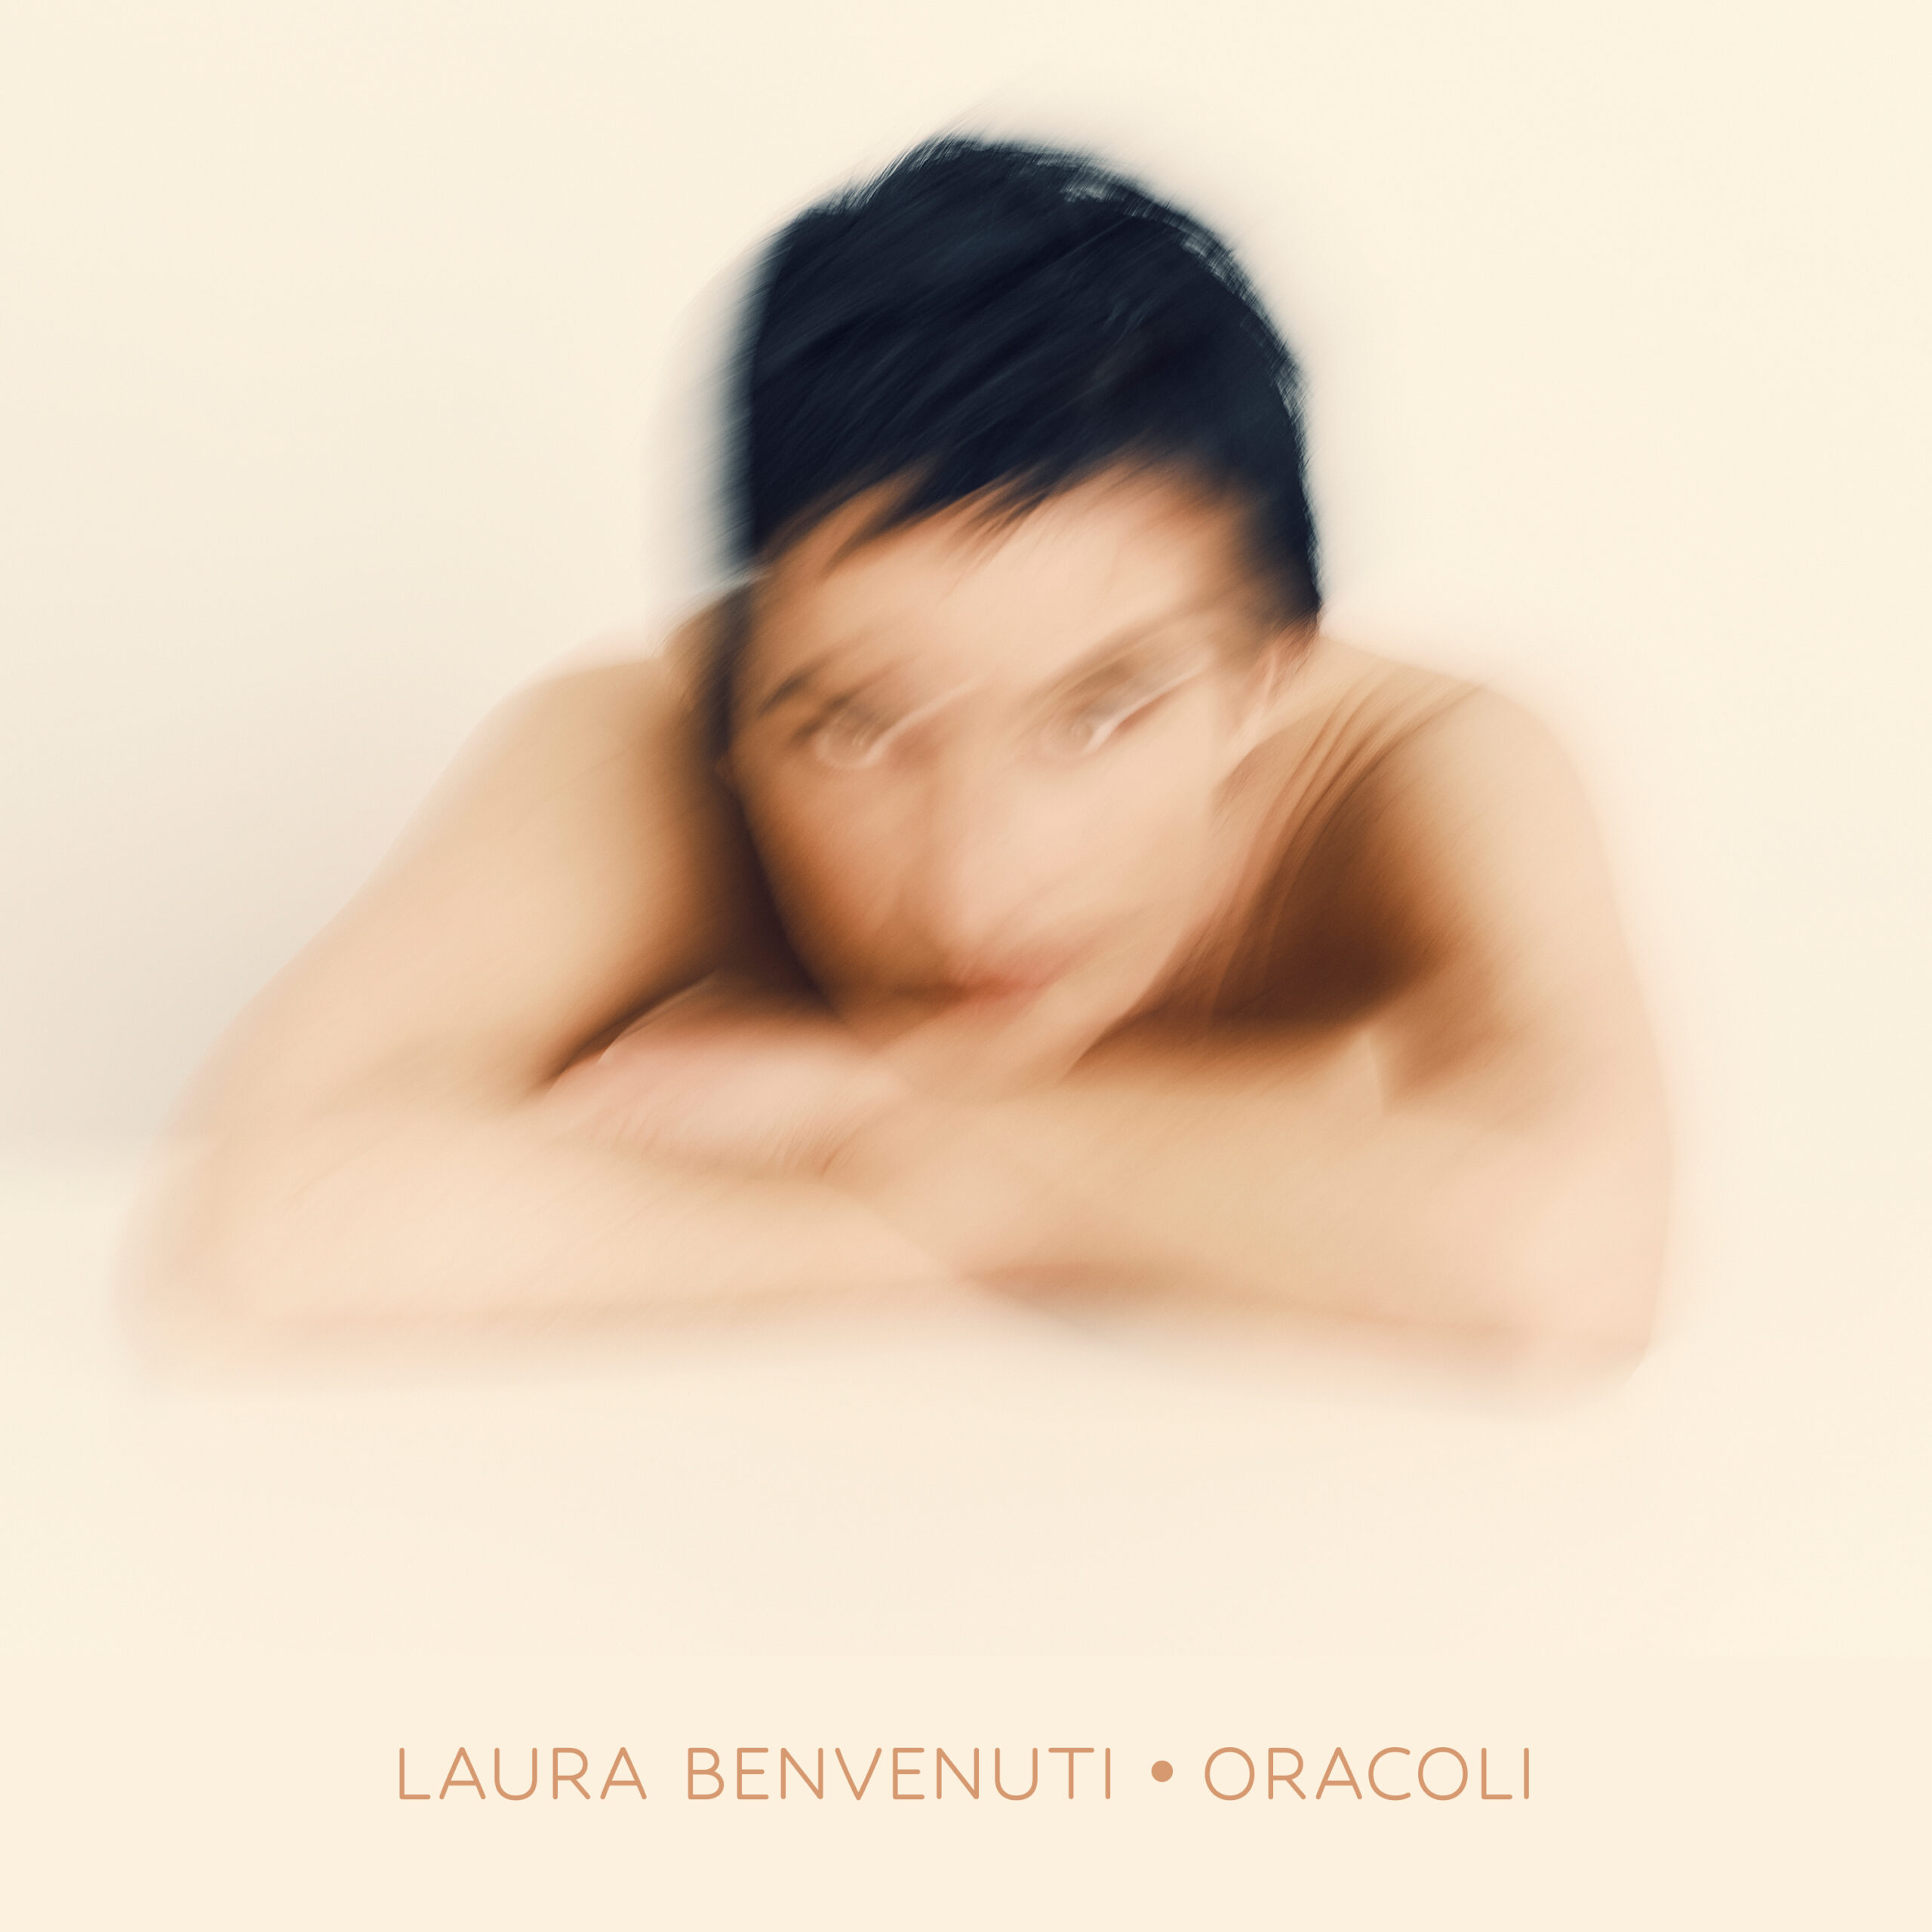 LAURA BENVENUTI,CANTAUTRICE, presenta il nuovo brano “ORACOLI”